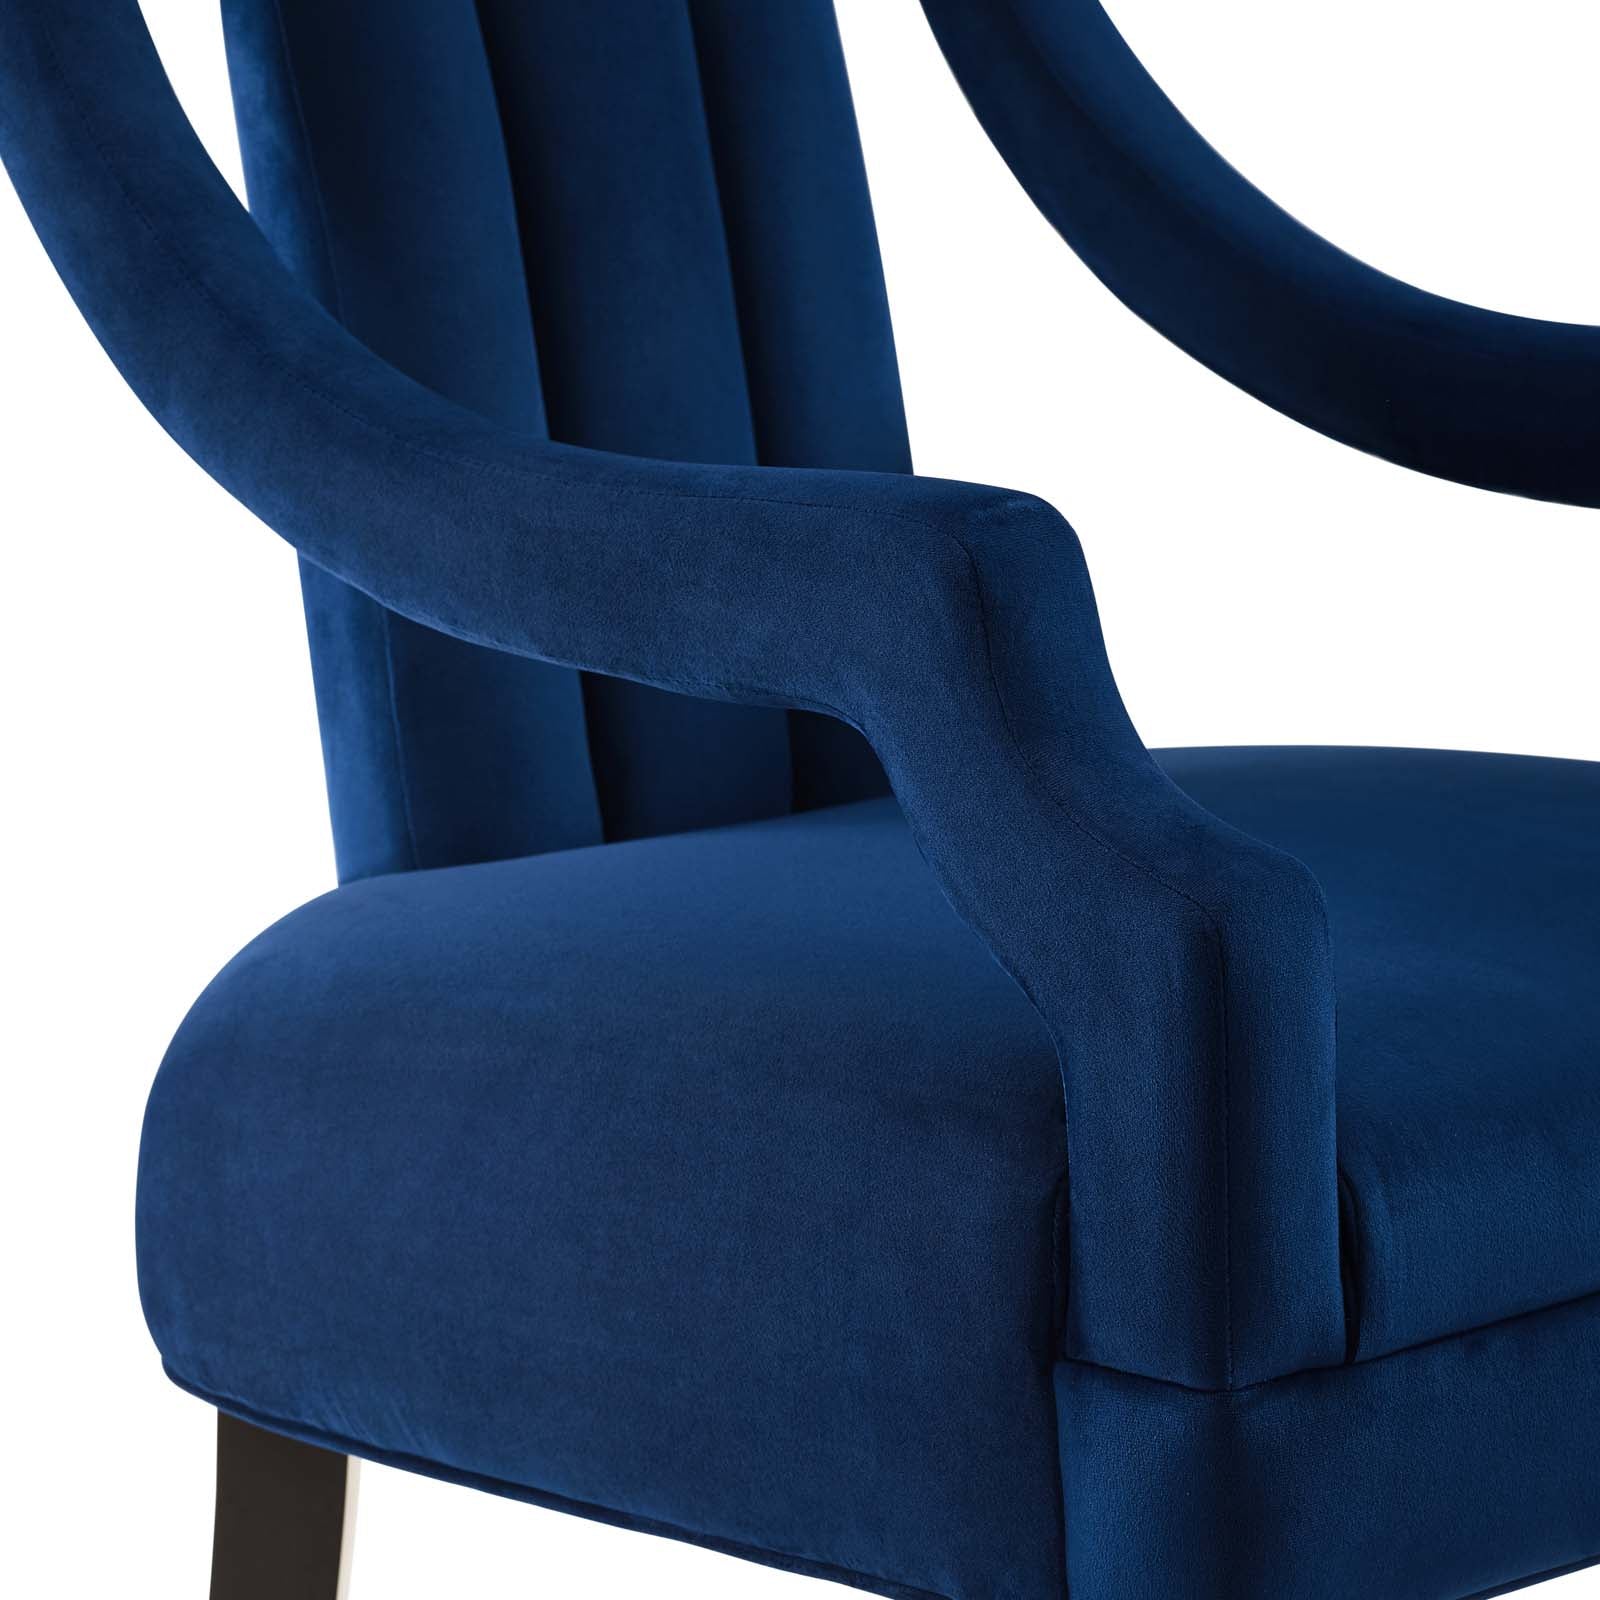 Harken Accent Chair Performance Velvet Set of 2 - East Shore Modern Home Furnishings